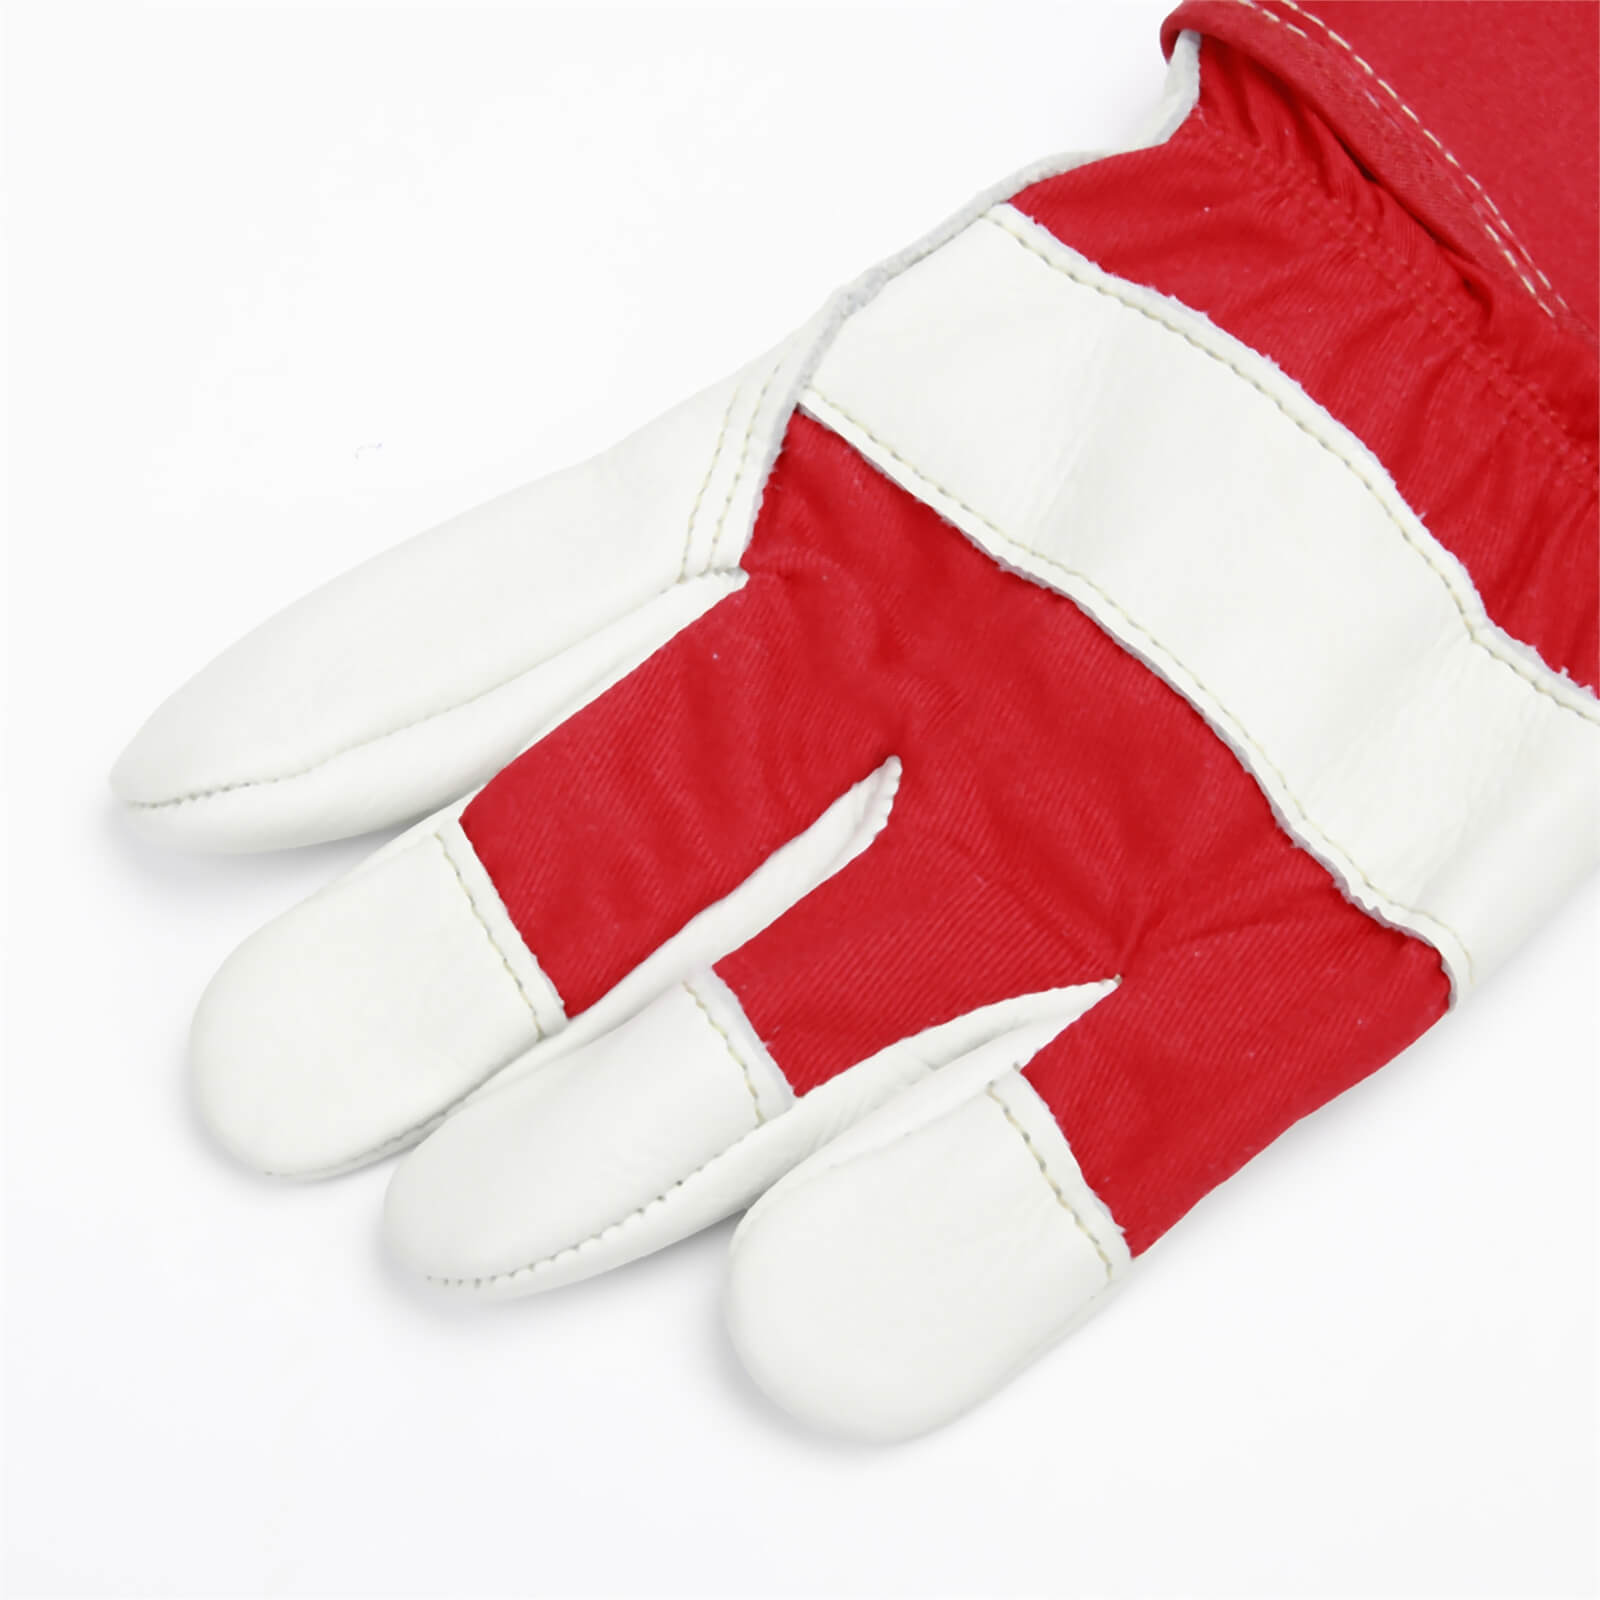 Homebase Premium Rigger Glove - Medium